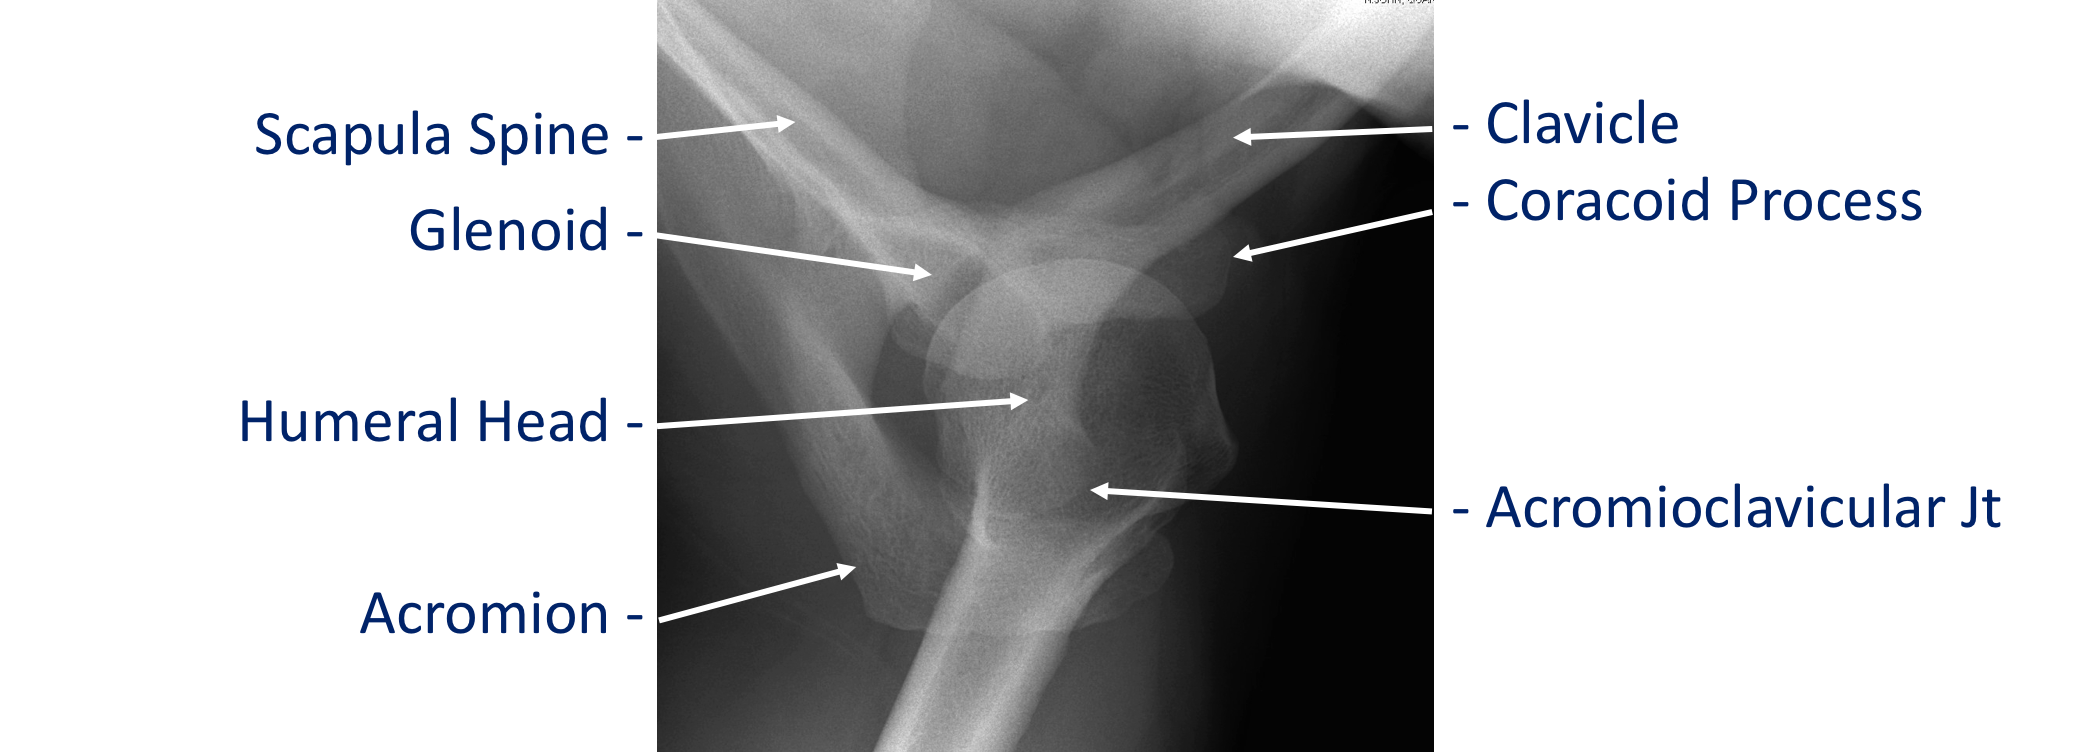 Fig 2. X-Ray Axillary